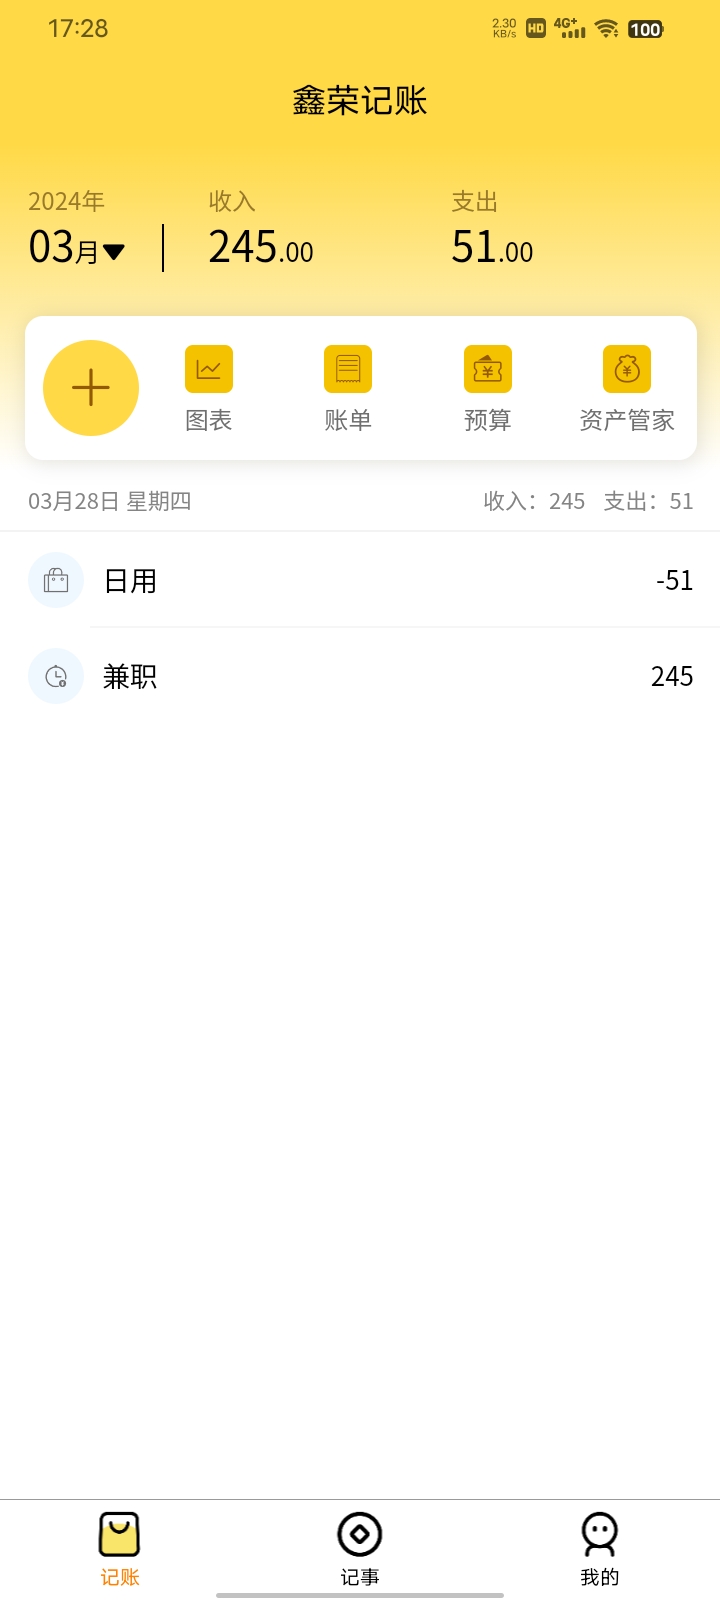 鑫荣记账软件最新版截图3: